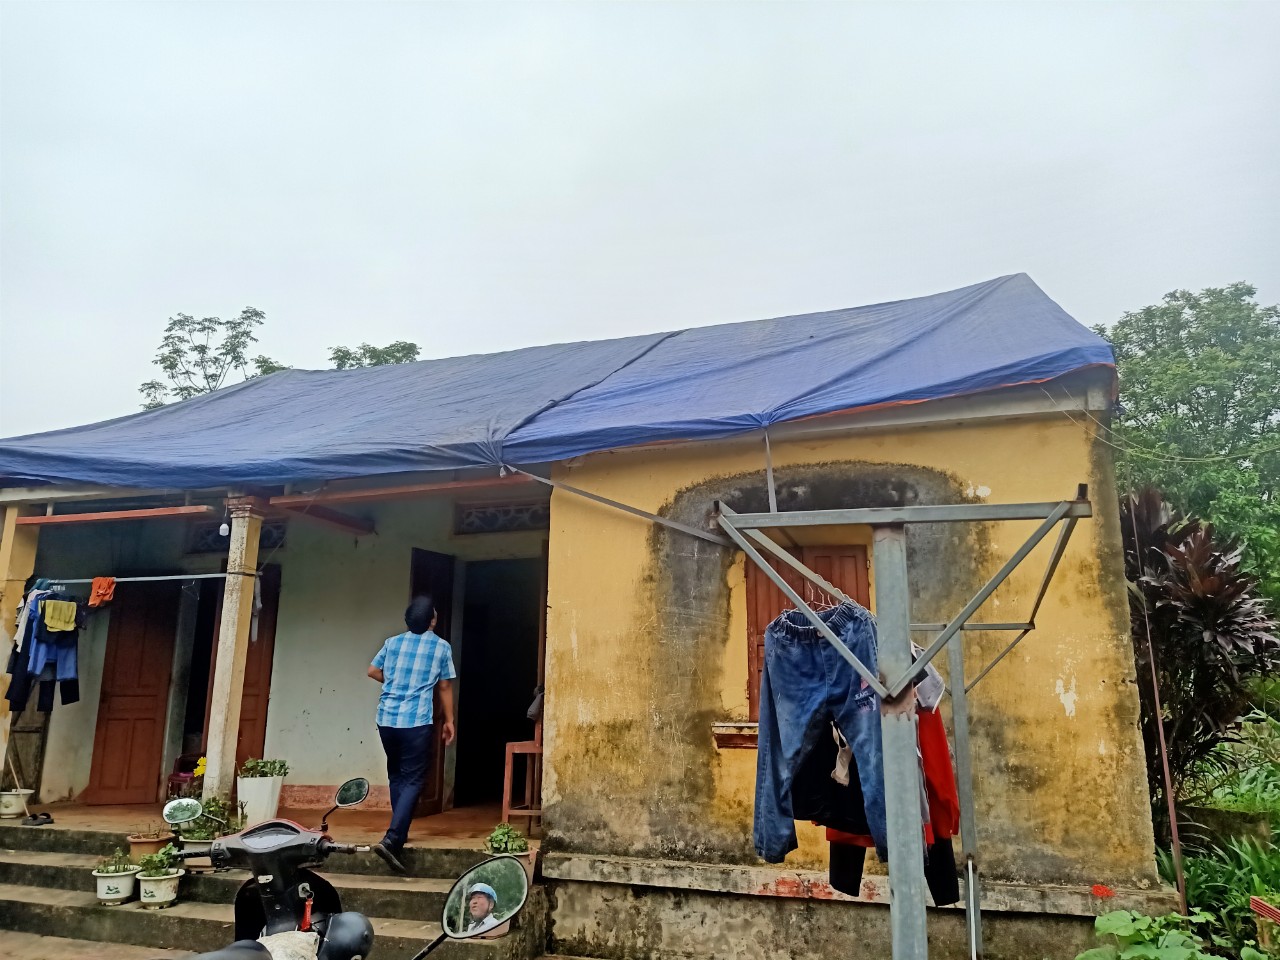 Ngôi nhà lợp bằng mái ngõi cũ tại xã Xuân Hưng bị mưa đá làm hư hỏng toàn bộ phải dùng bạt để bao phủ